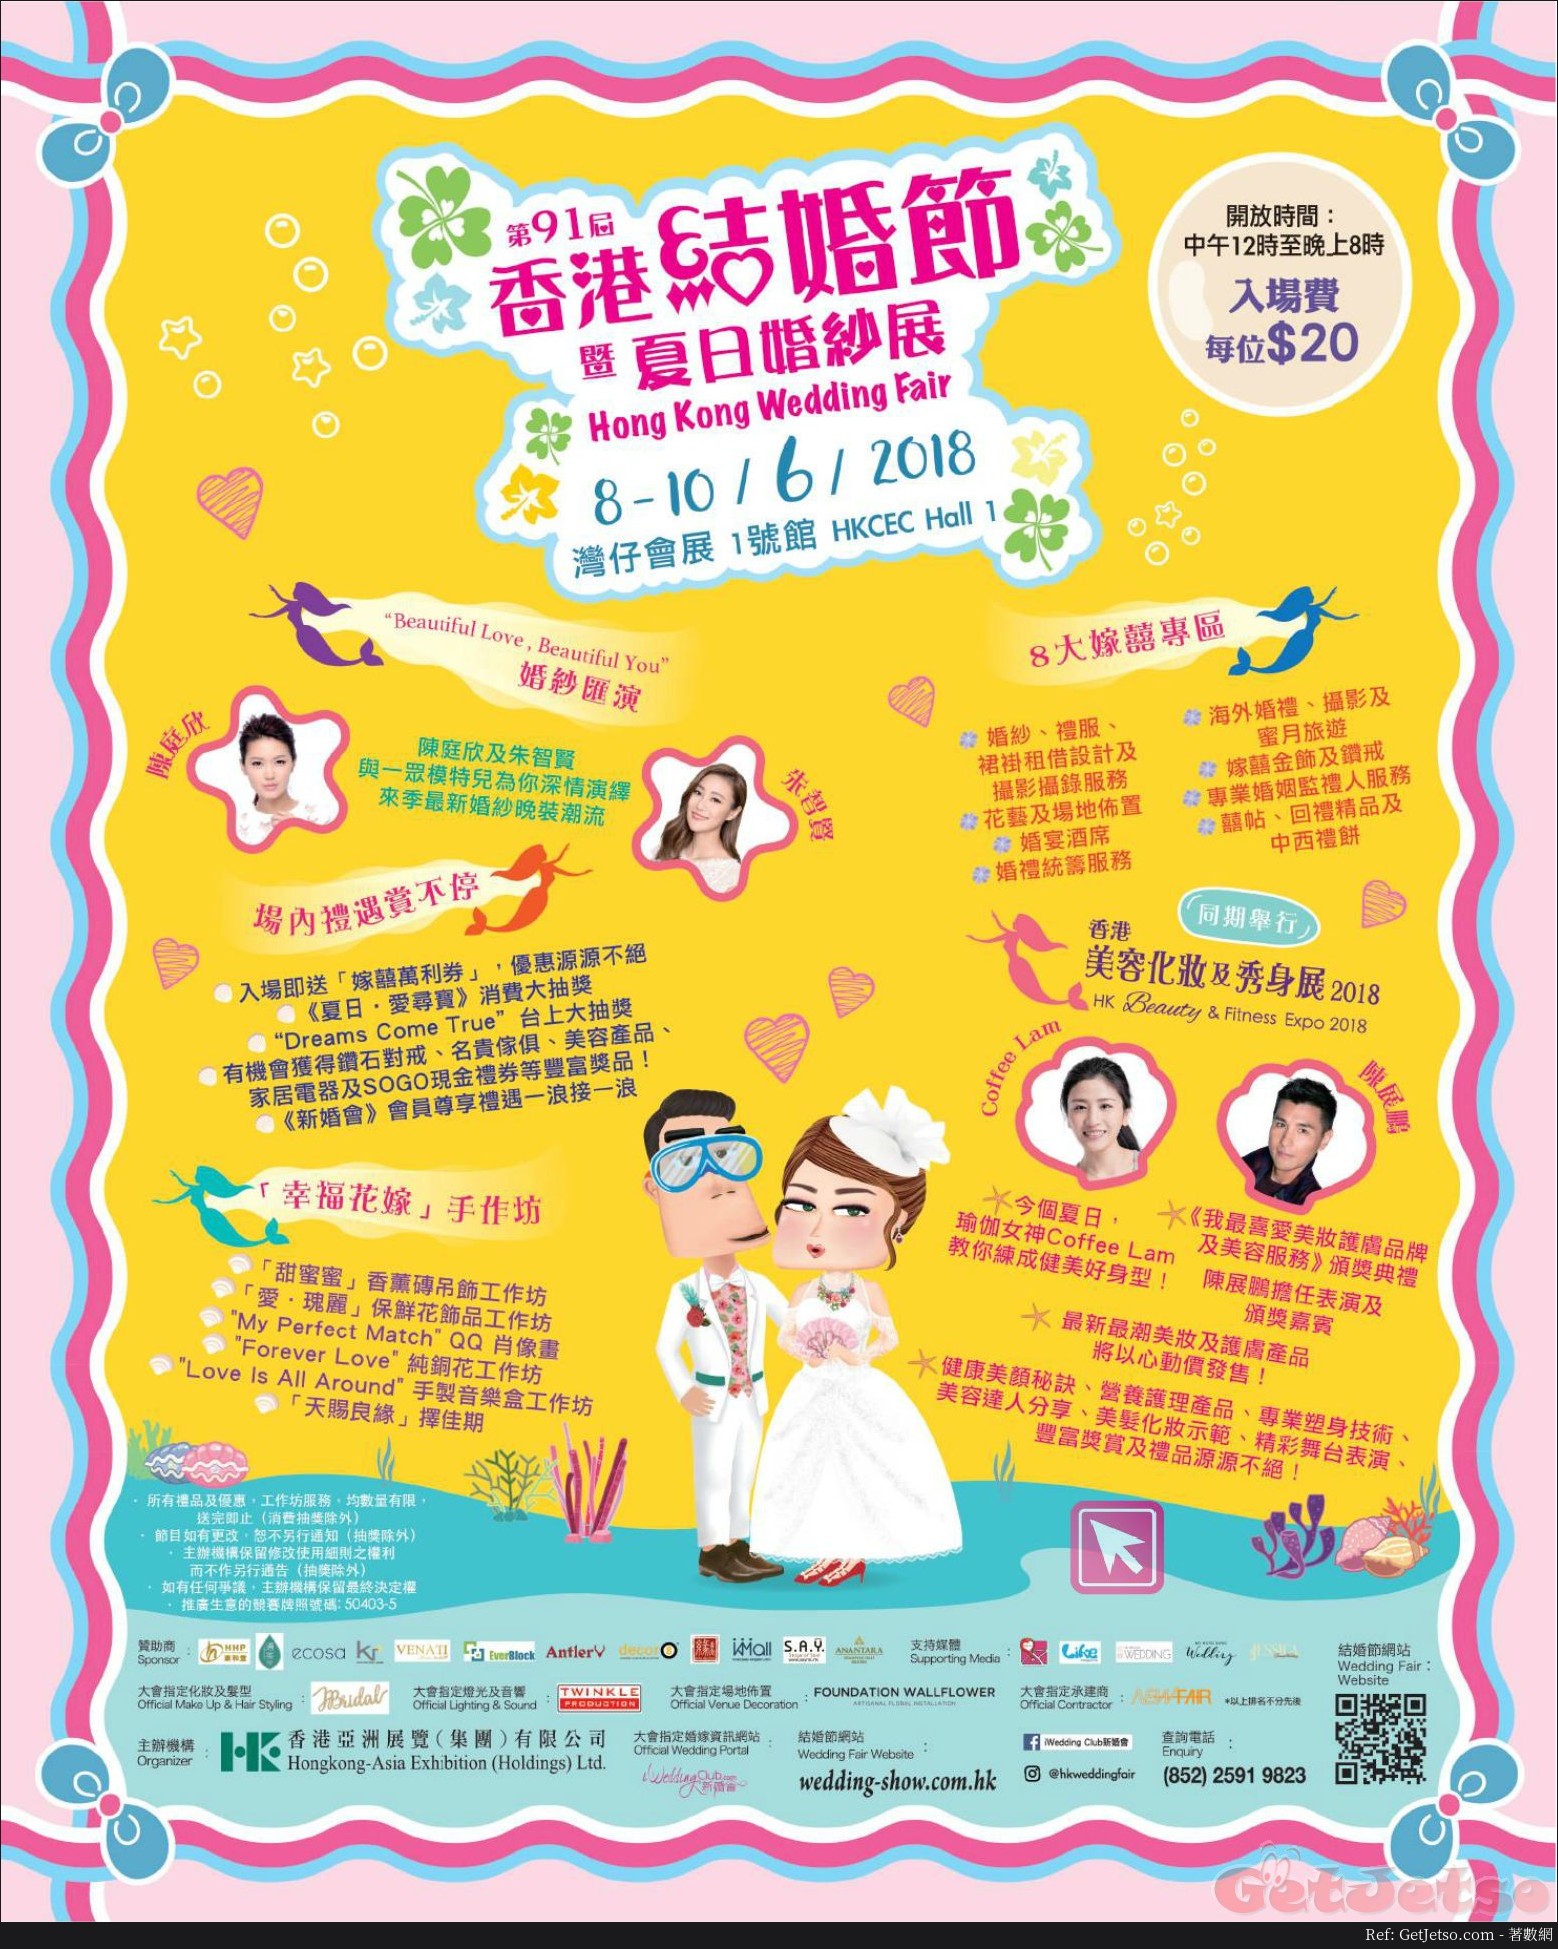 第91屆香港結婚節暨夏日婚紗展(18年6月8-10日)圖片1